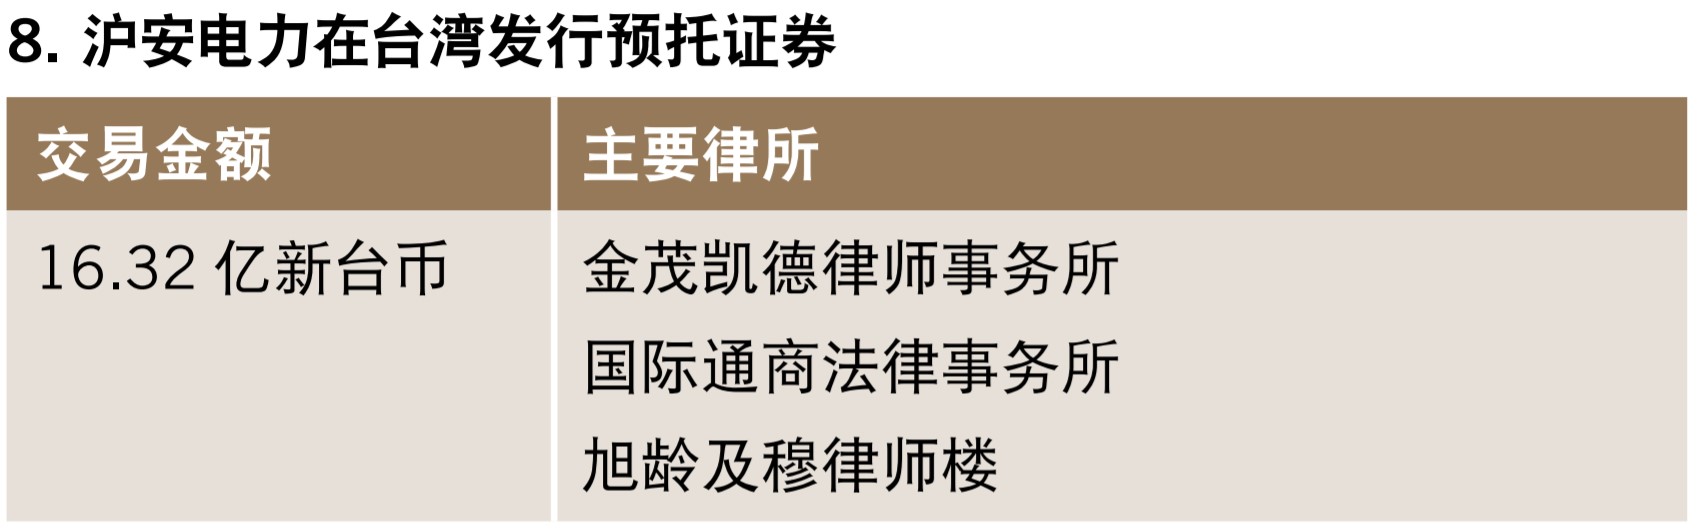 沪安电力在台湾发行预托证券